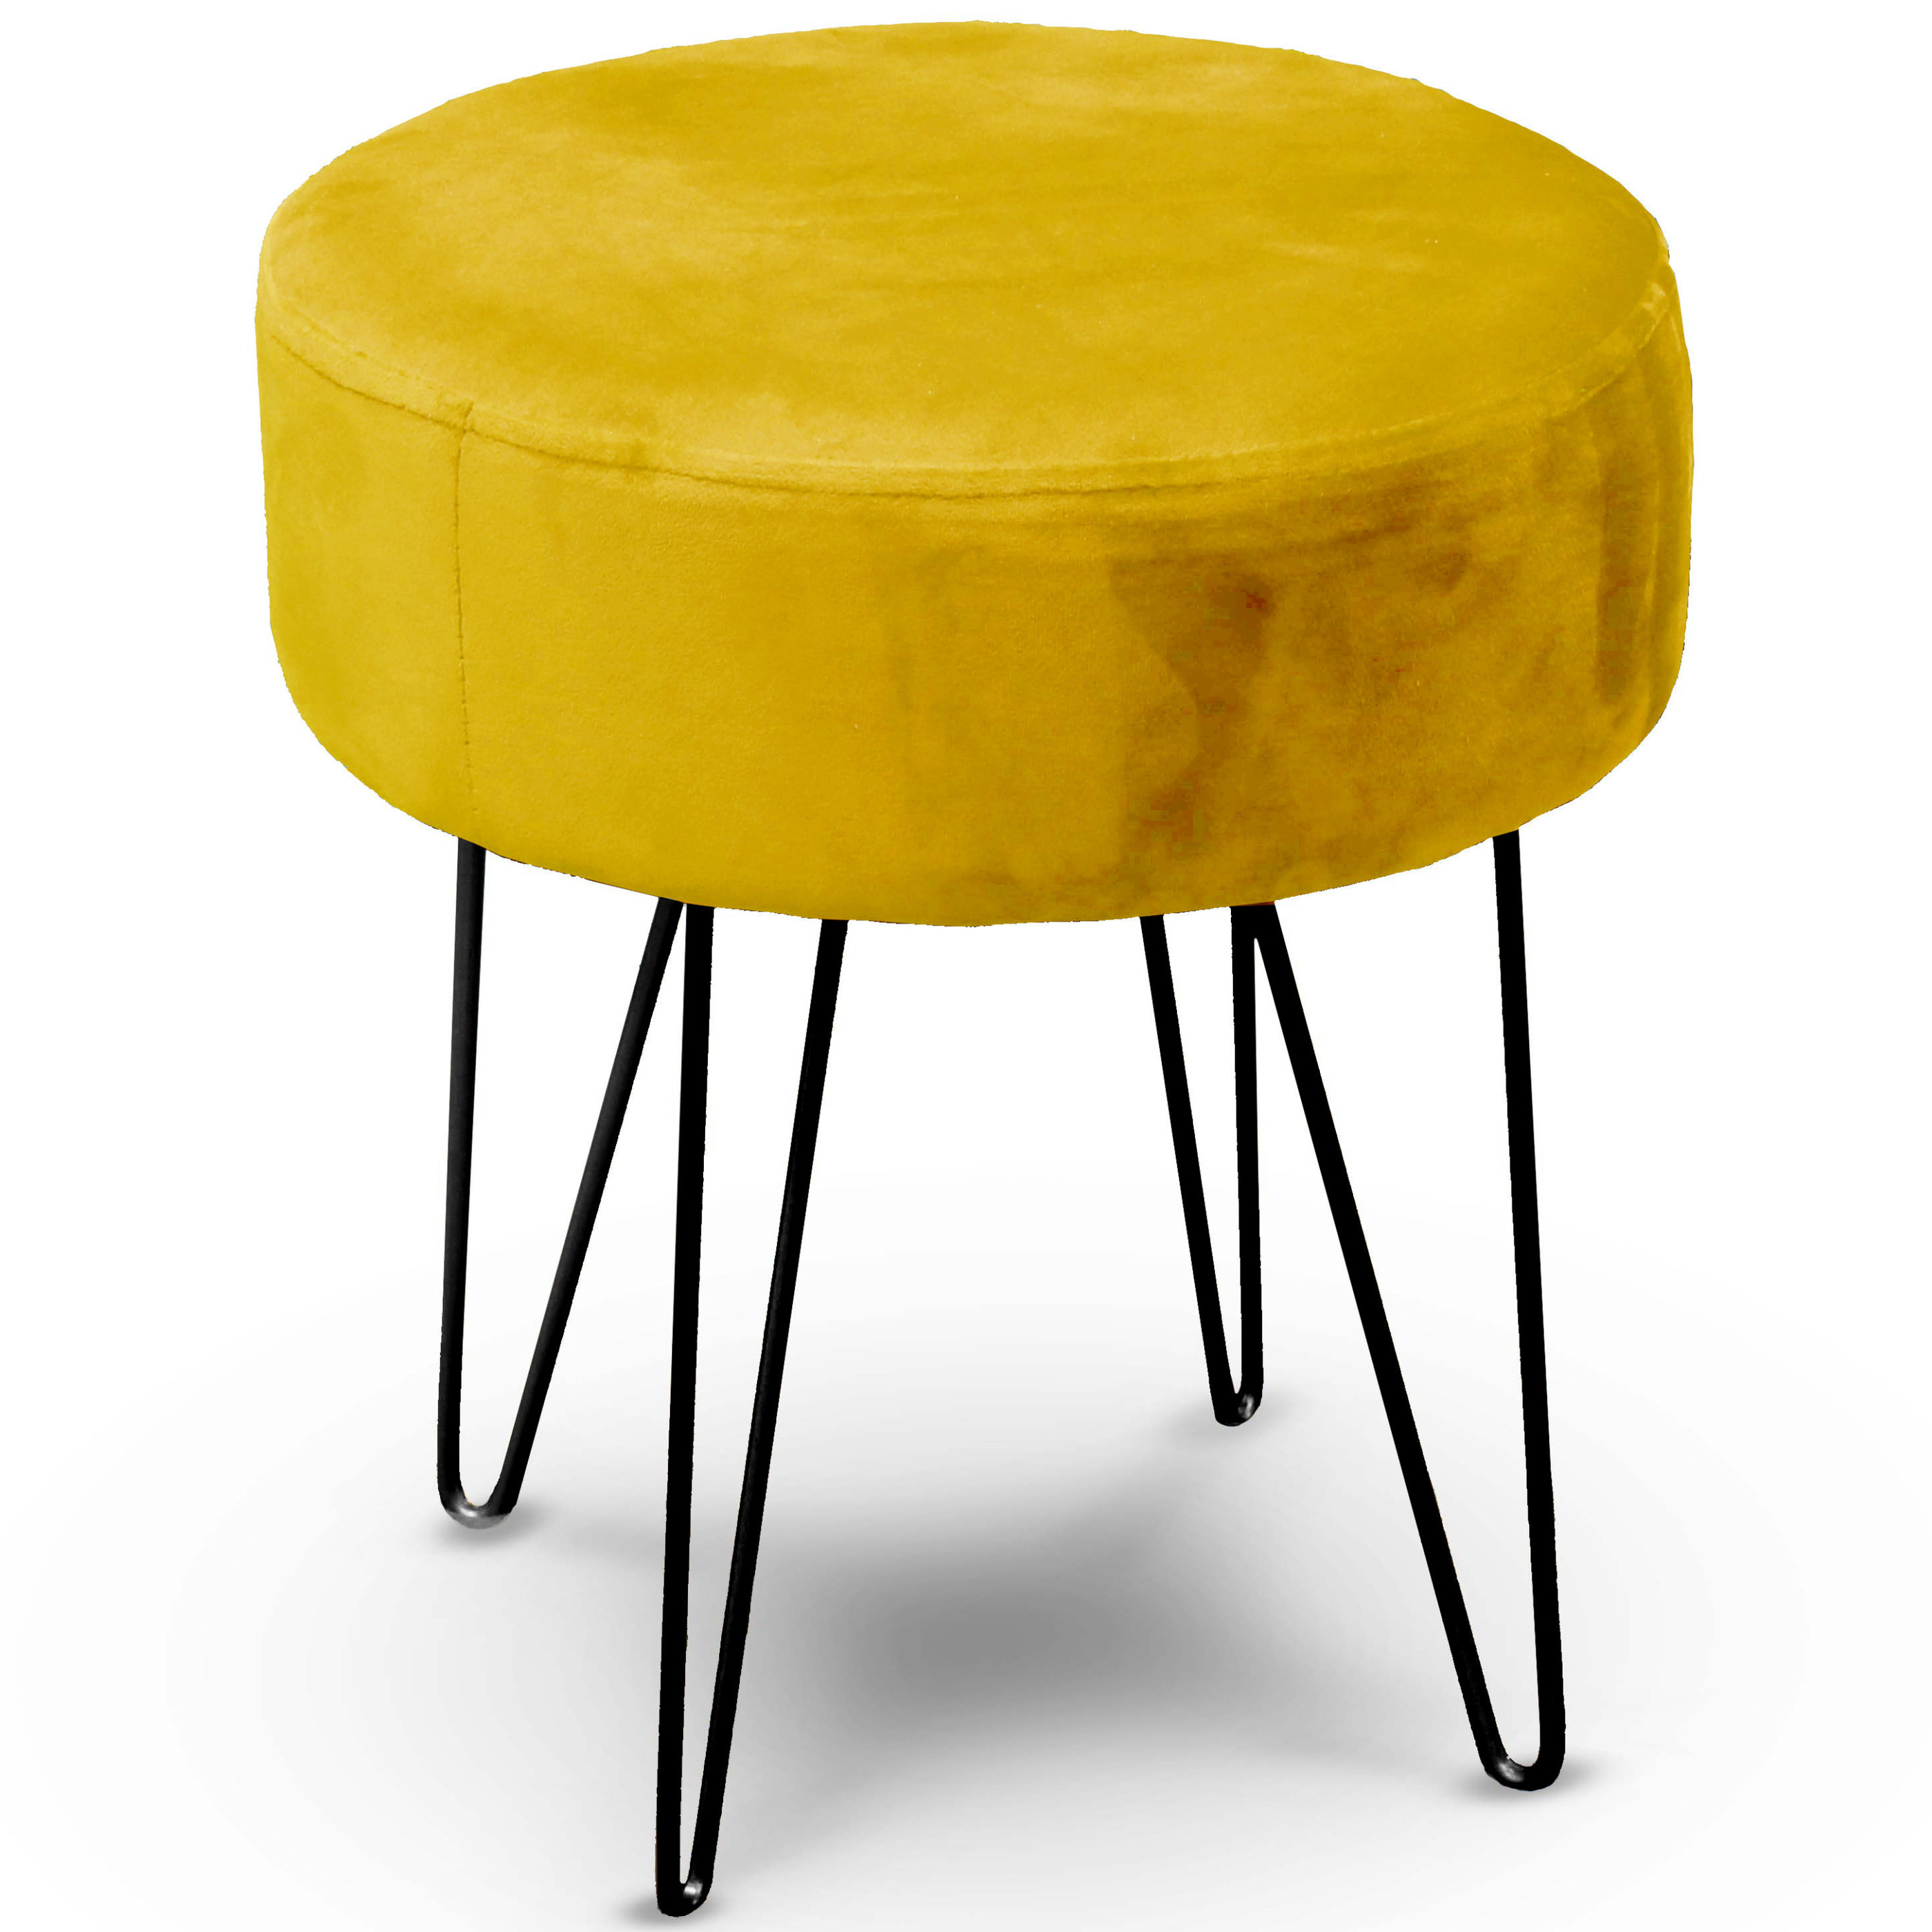 Unique Living Velvet kruk Davy - oker geel - metaal/stof - D35 x H40 cm - bijzet stoeltjes -